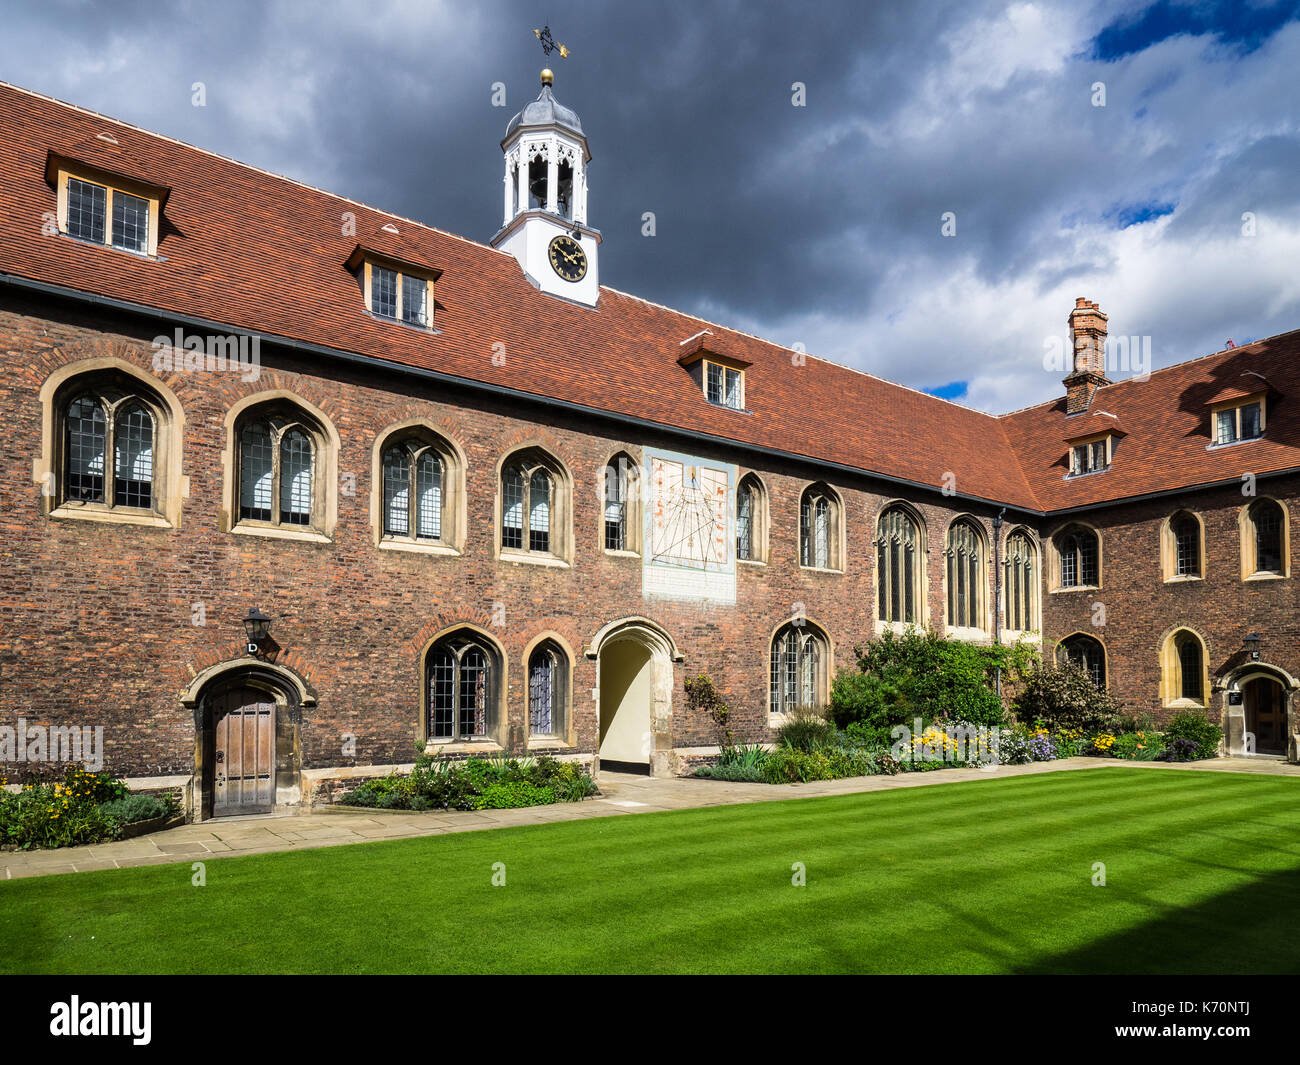 Queens College University of Cambridge - cour intérieure et de l'horloge du Queens College, qui fait partie de l'Université de Cambridge, le collège a été fondé 1448 Banque D'Images